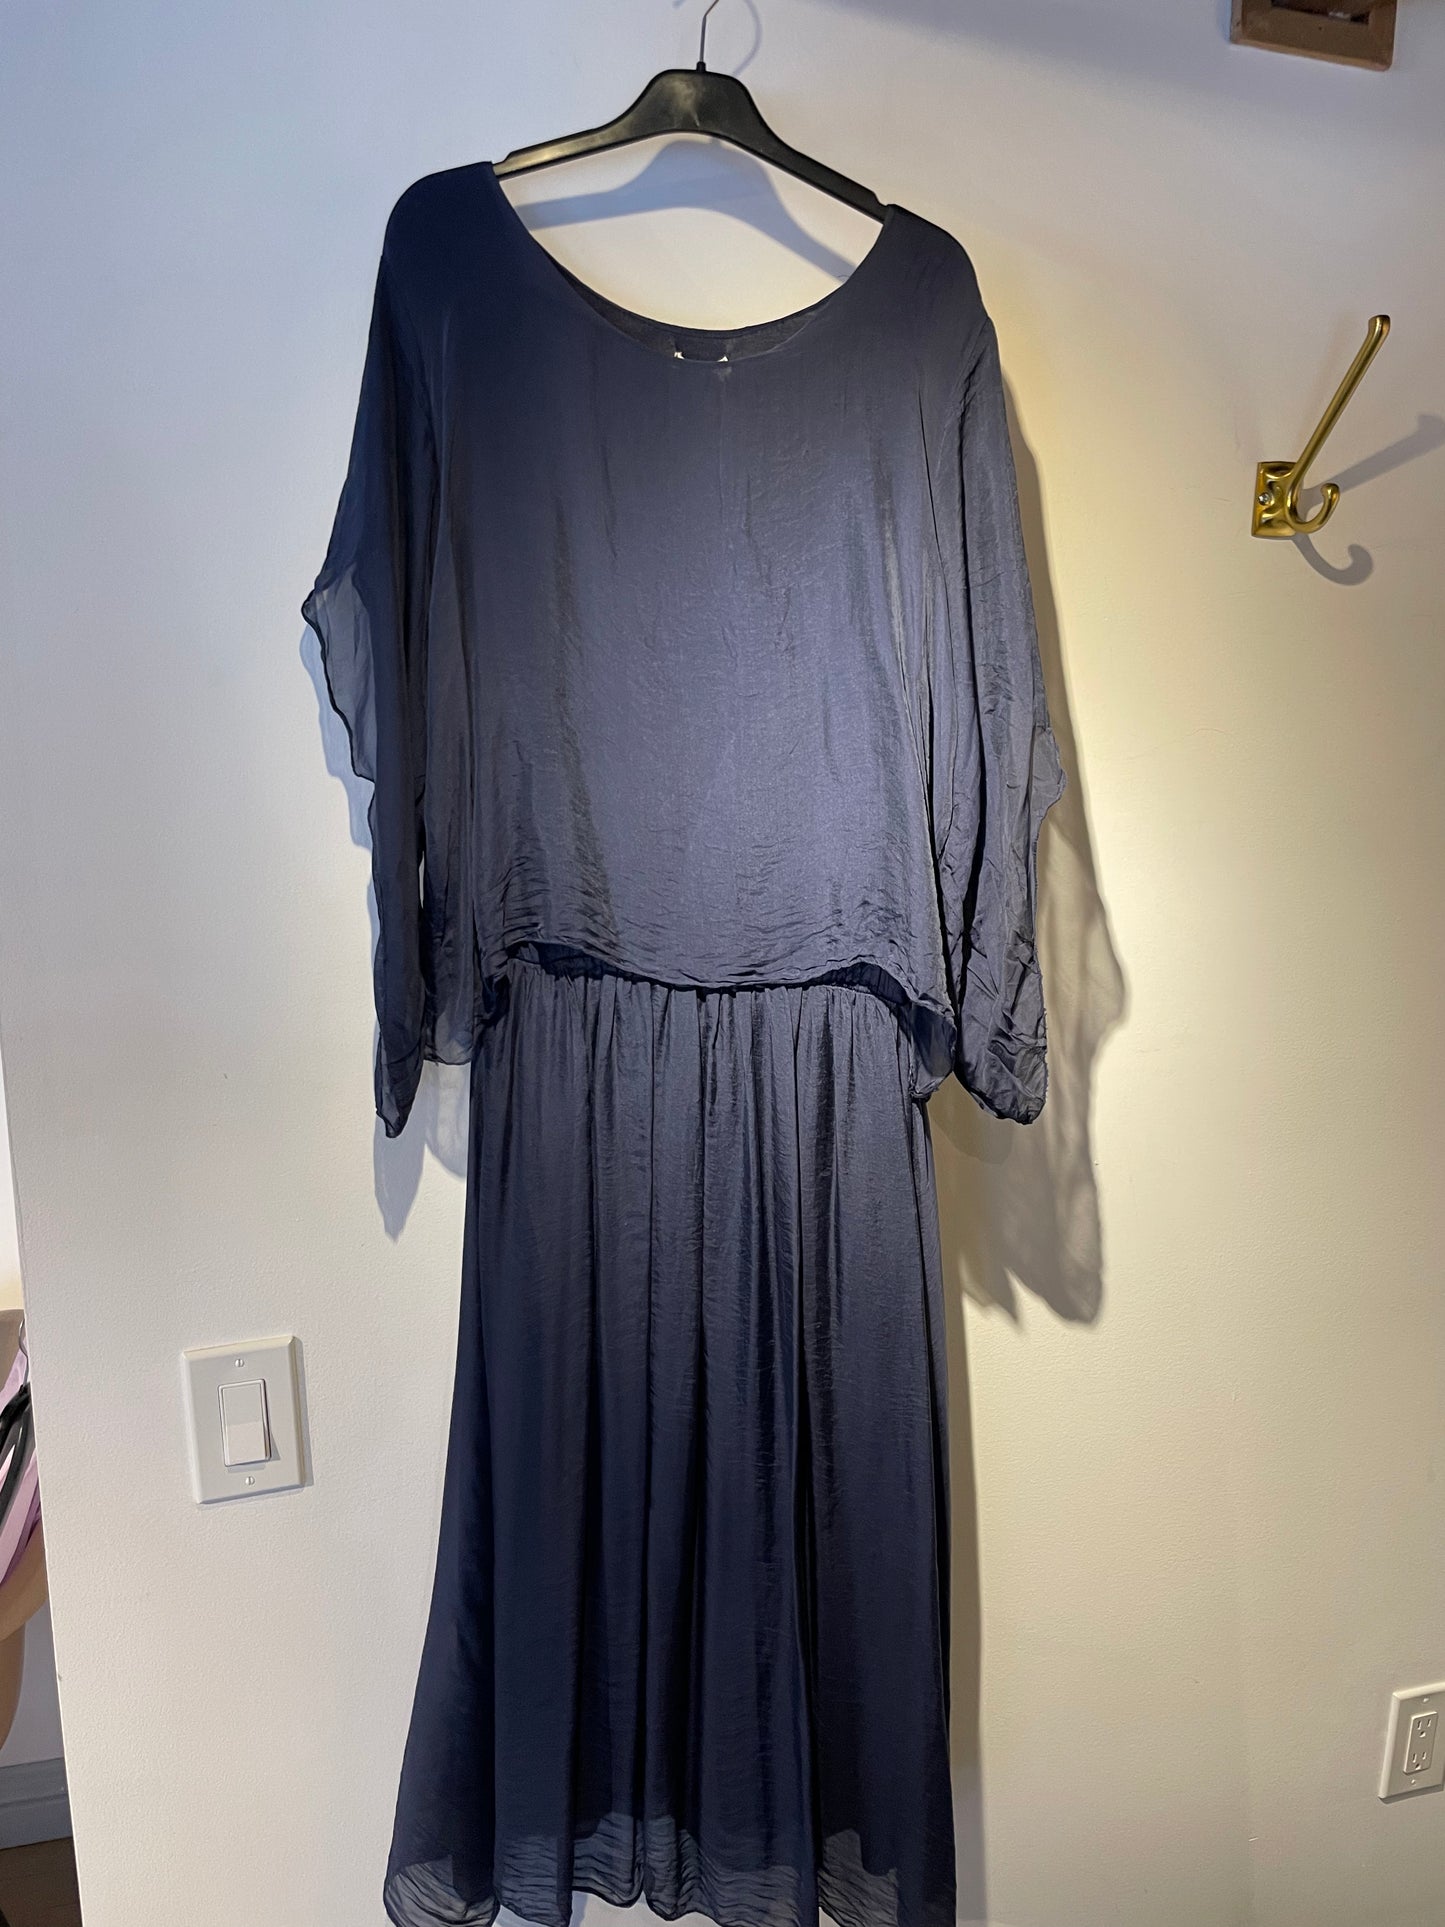 EL- 20705 Robe en soie / Silk Dress